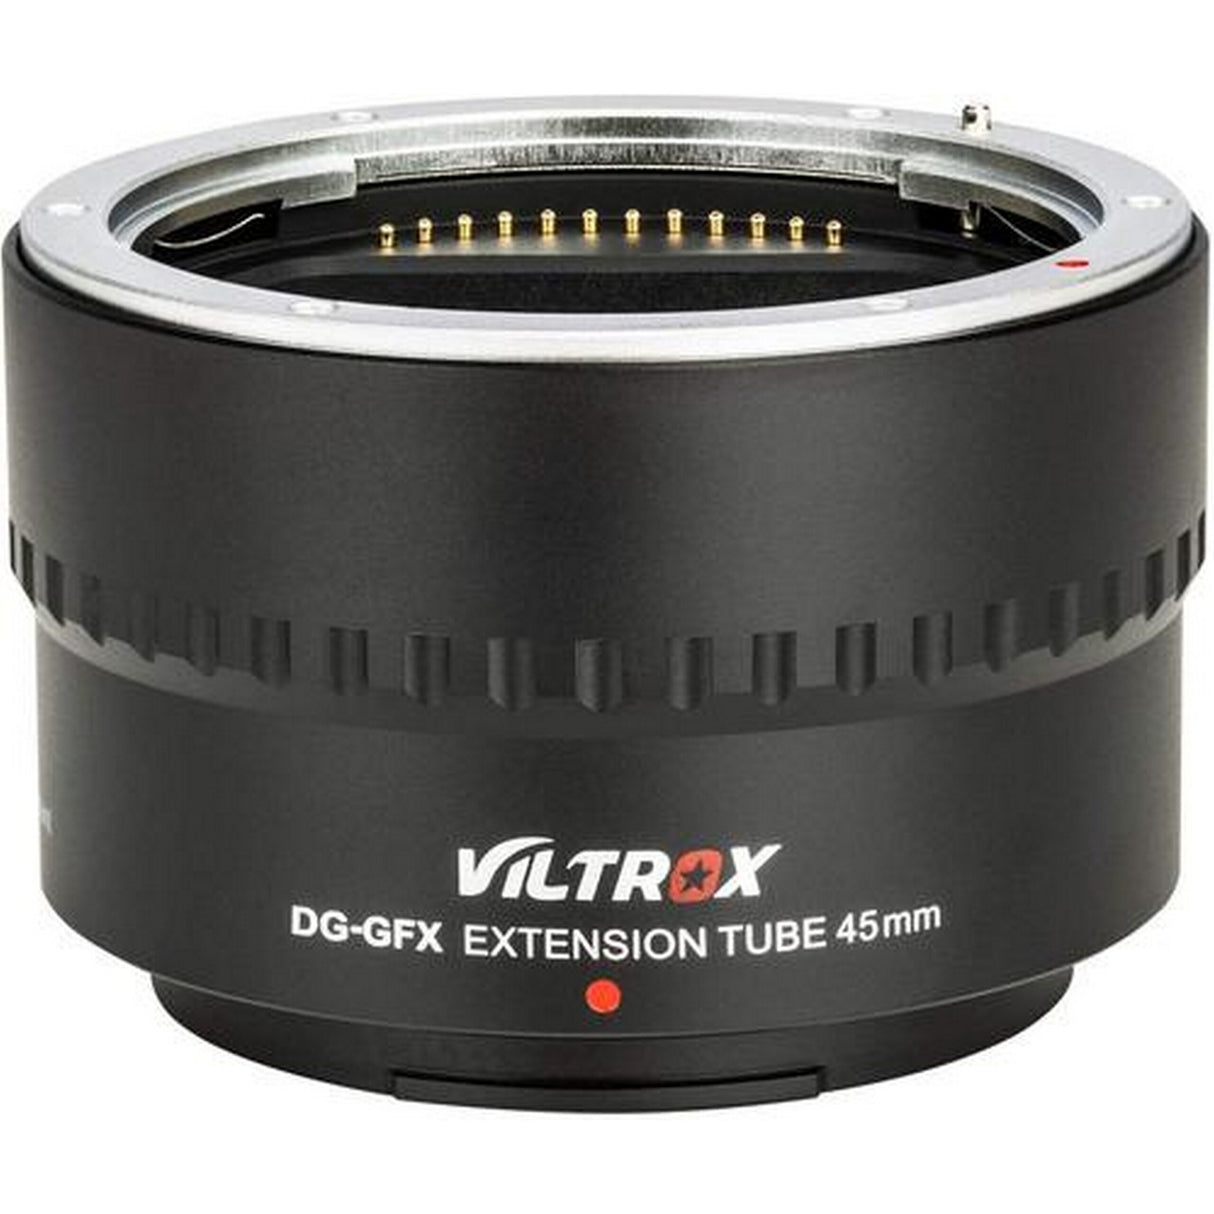 Viltrox DG-GFX Extension Tube for Fuji GFX, 18mm